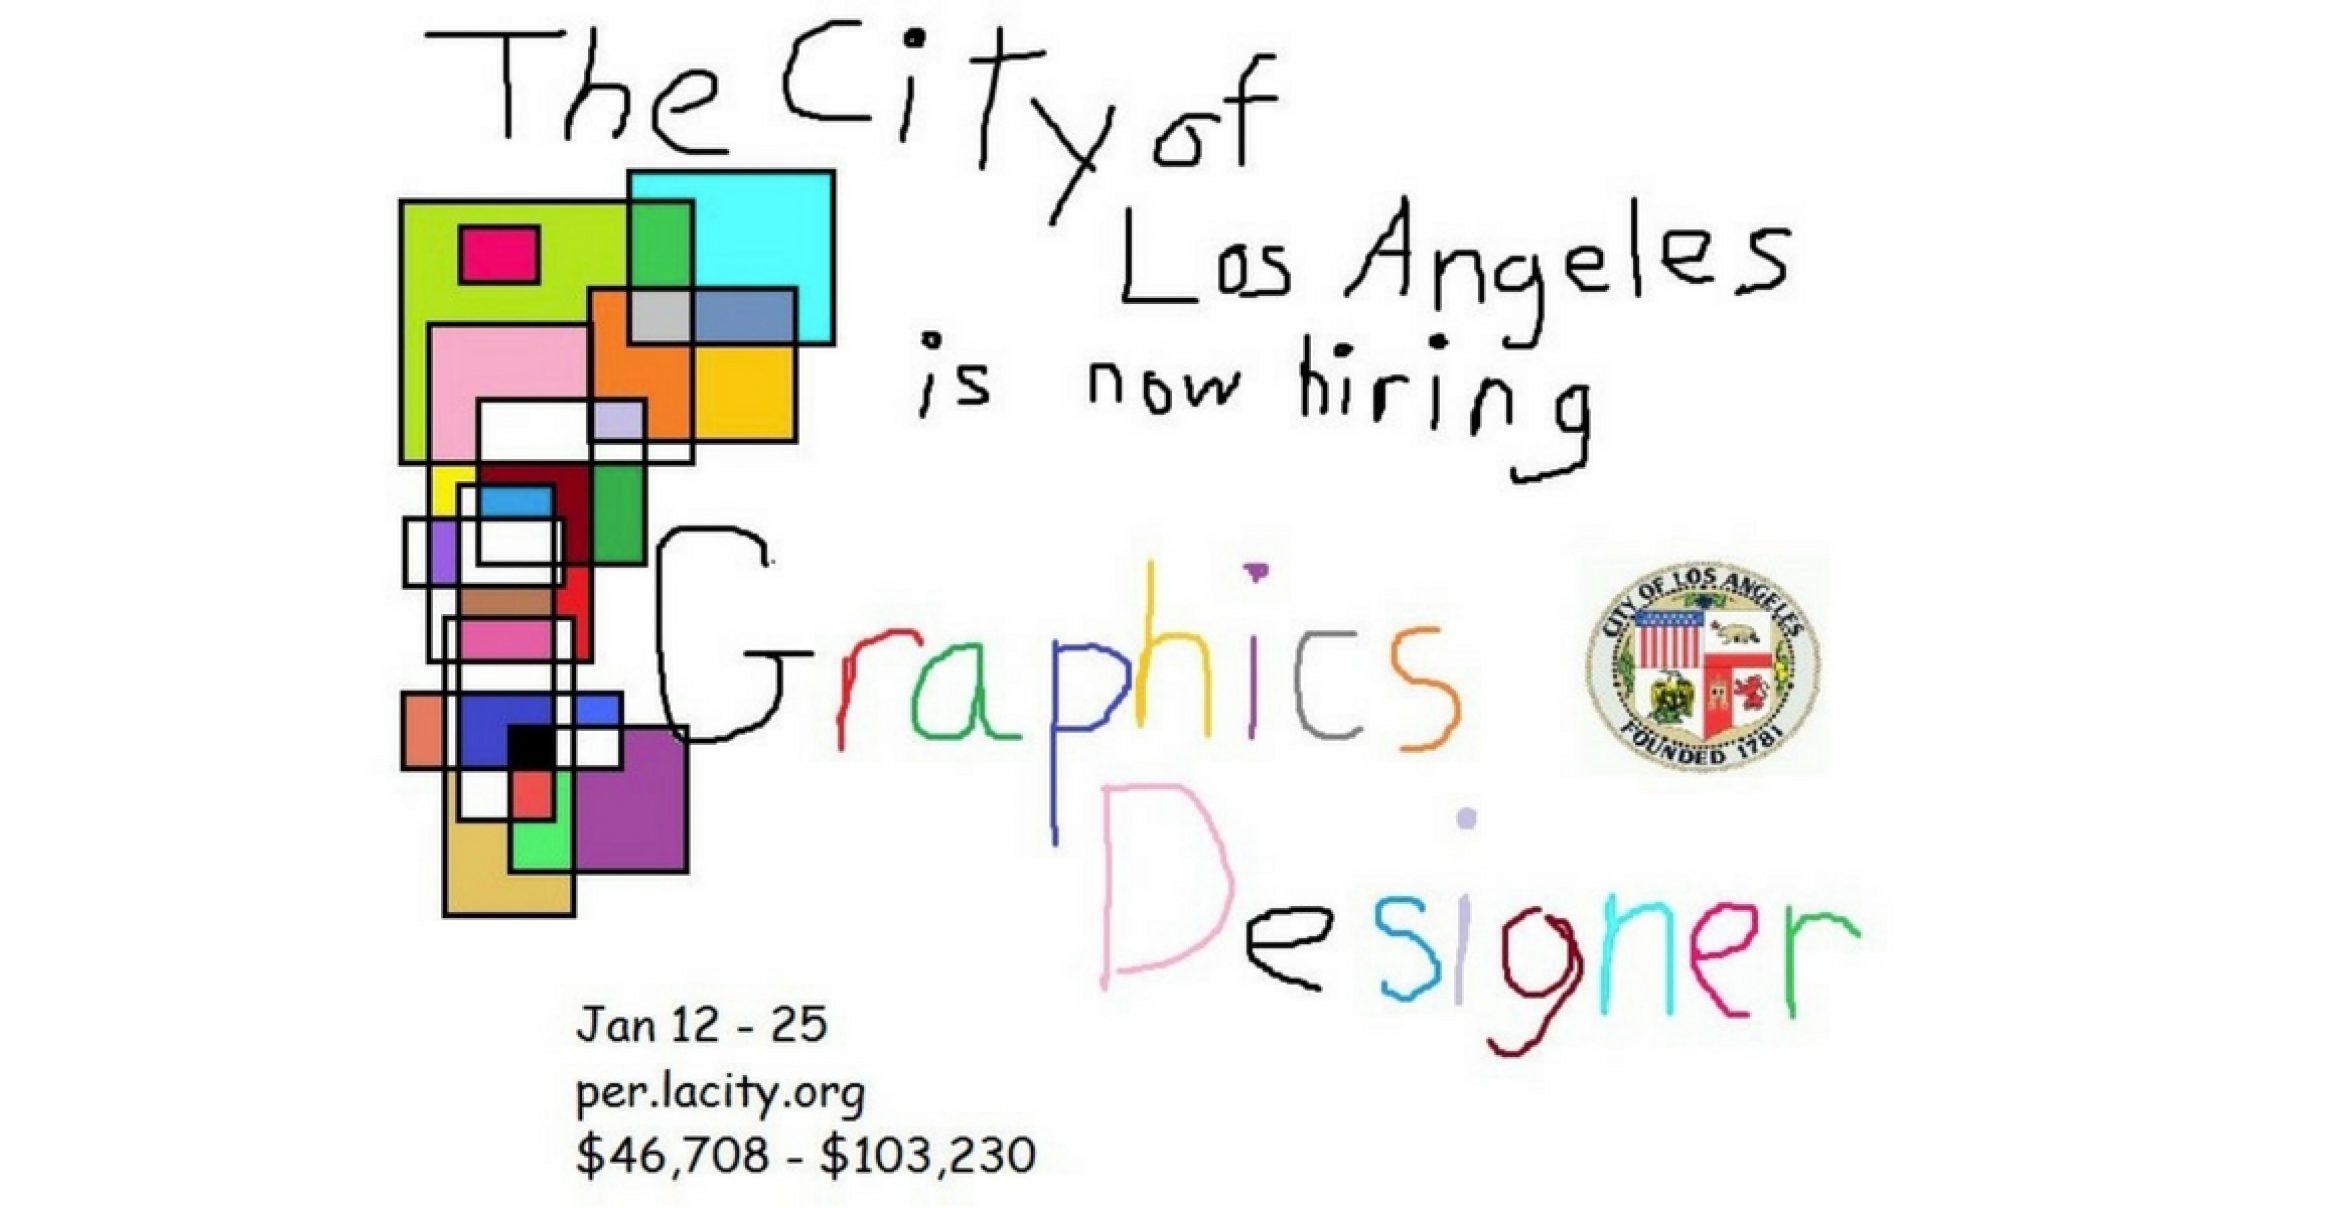 Grafiker gesucht: “City of Los Angeles“ wirbt mit Microsoft Paint Jobanzeige